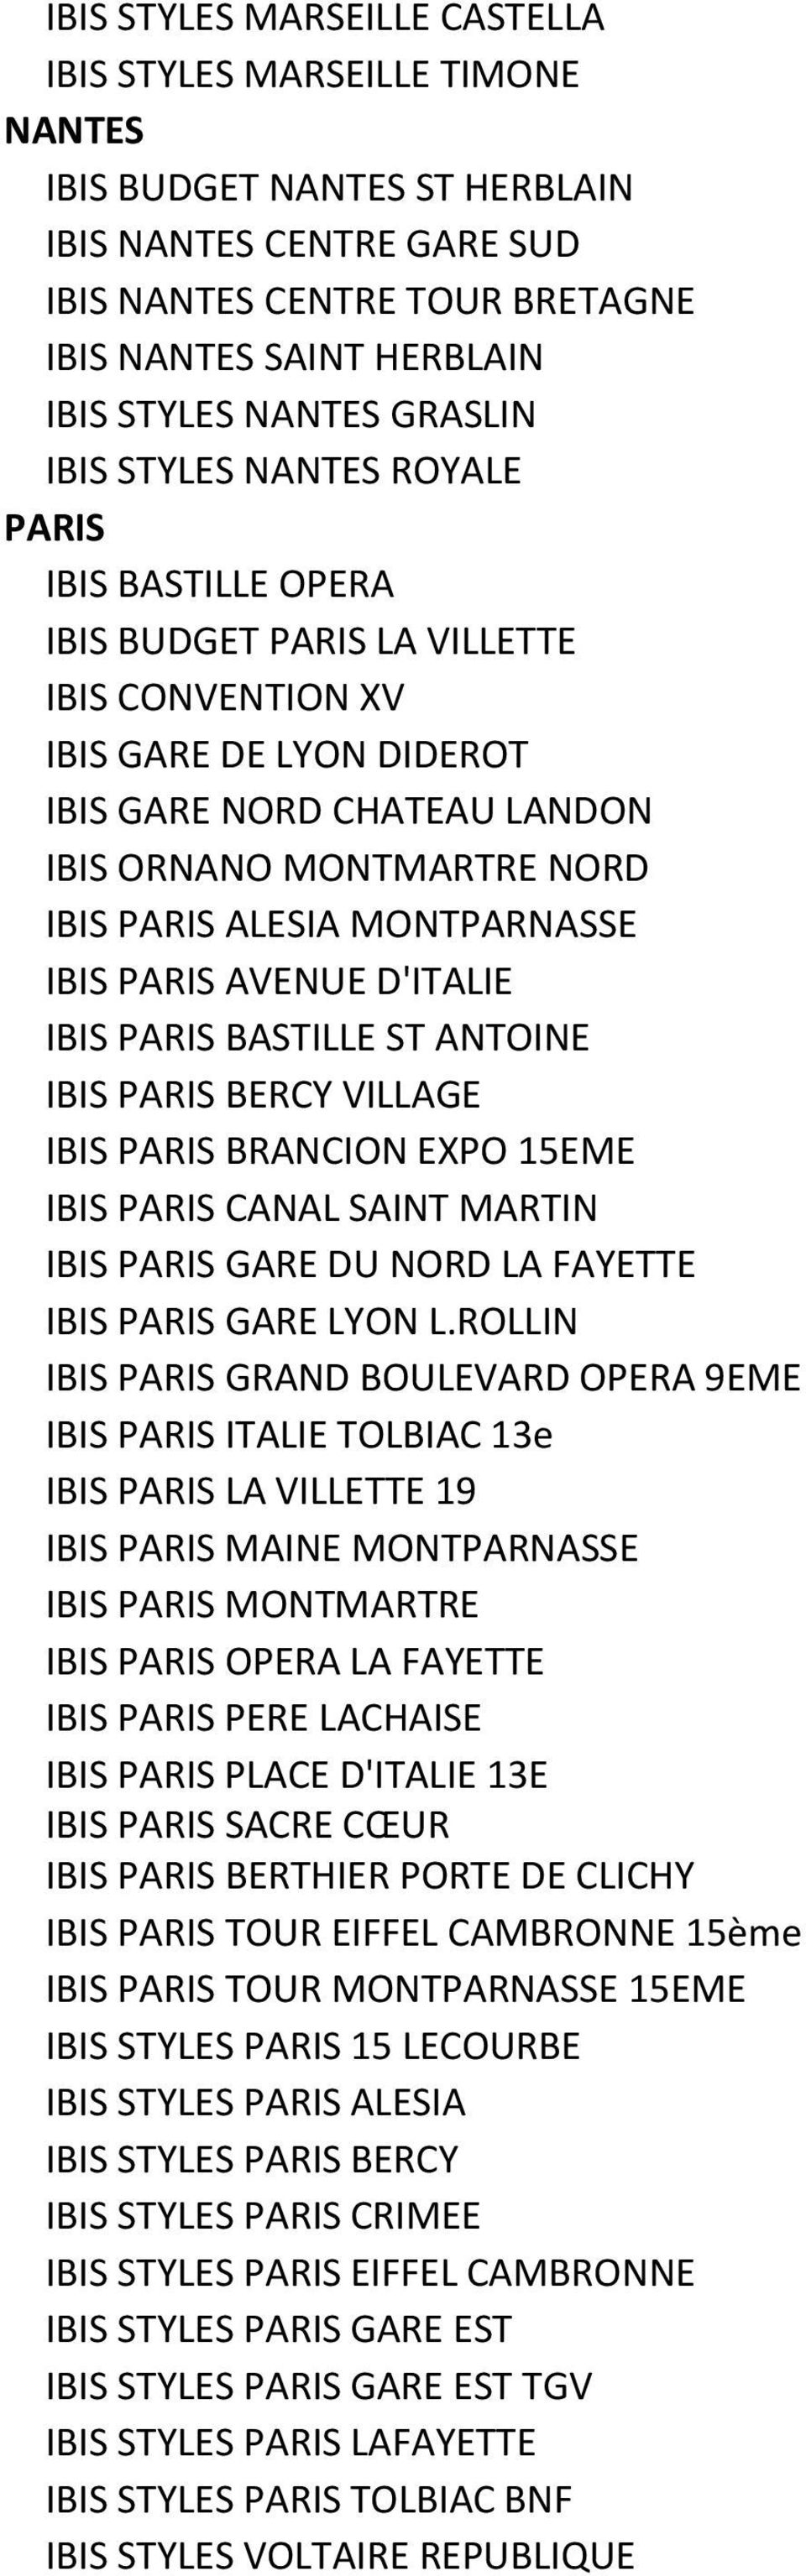 IBIS PARIS ALESIA MONTPARNASSE IBIS PARIS AVENUE D'ITALIE IBIS PARIS BASTILLE ST ANTOINE IBIS PARIS BERCY VILLAGE IBIS PARIS BRANCION EXPO 15EME IBIS PARIS CANAL SAINT MARTIN IBIS PARIS GARE DU NORD